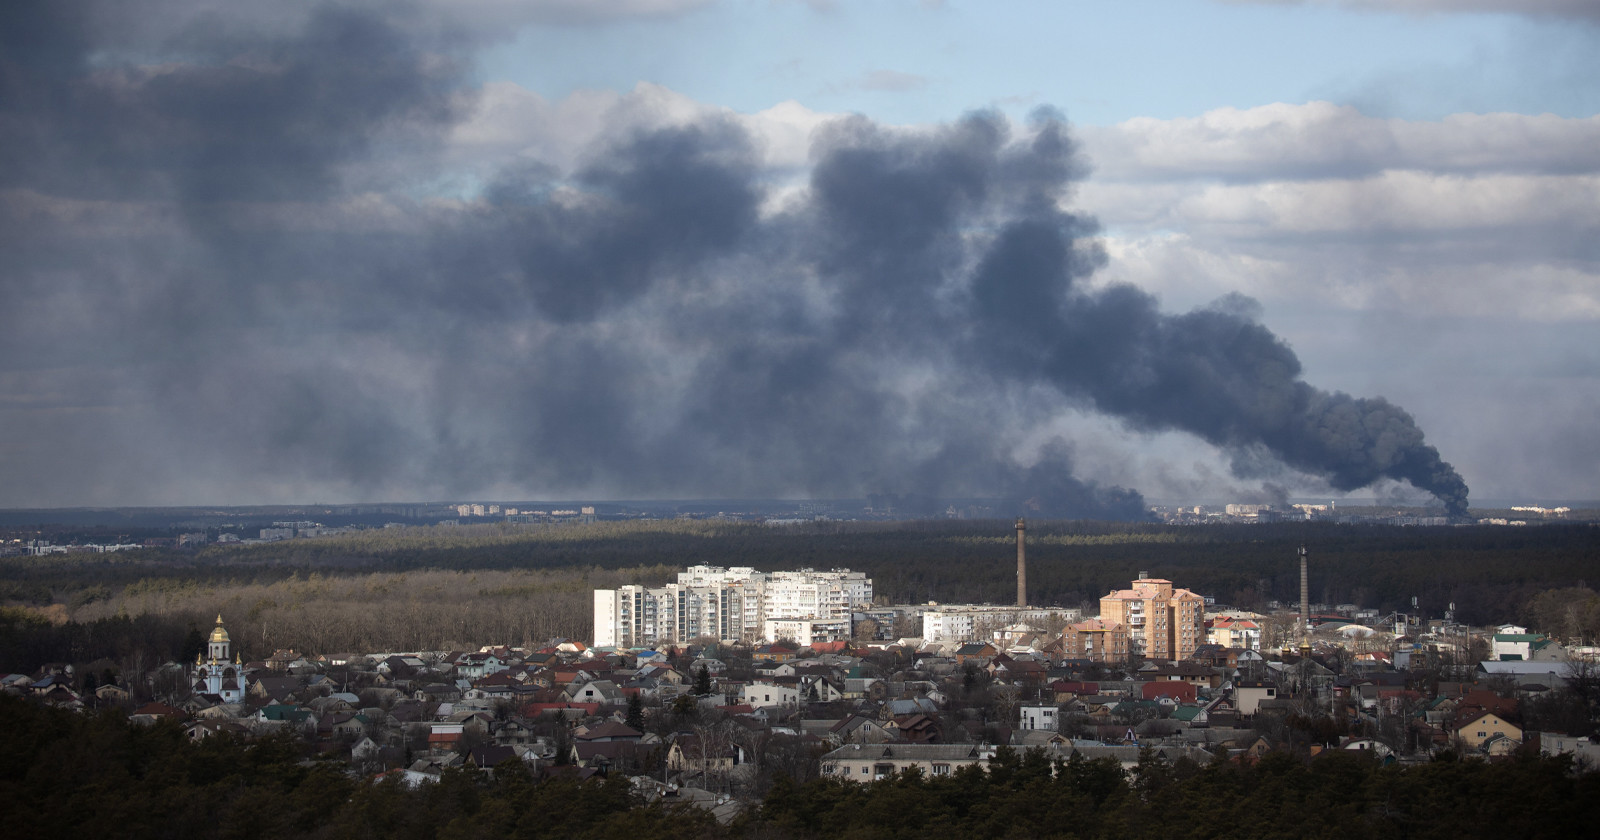 Photojournalist Lynsey Addario Captures the Unfolding War in Ukraine